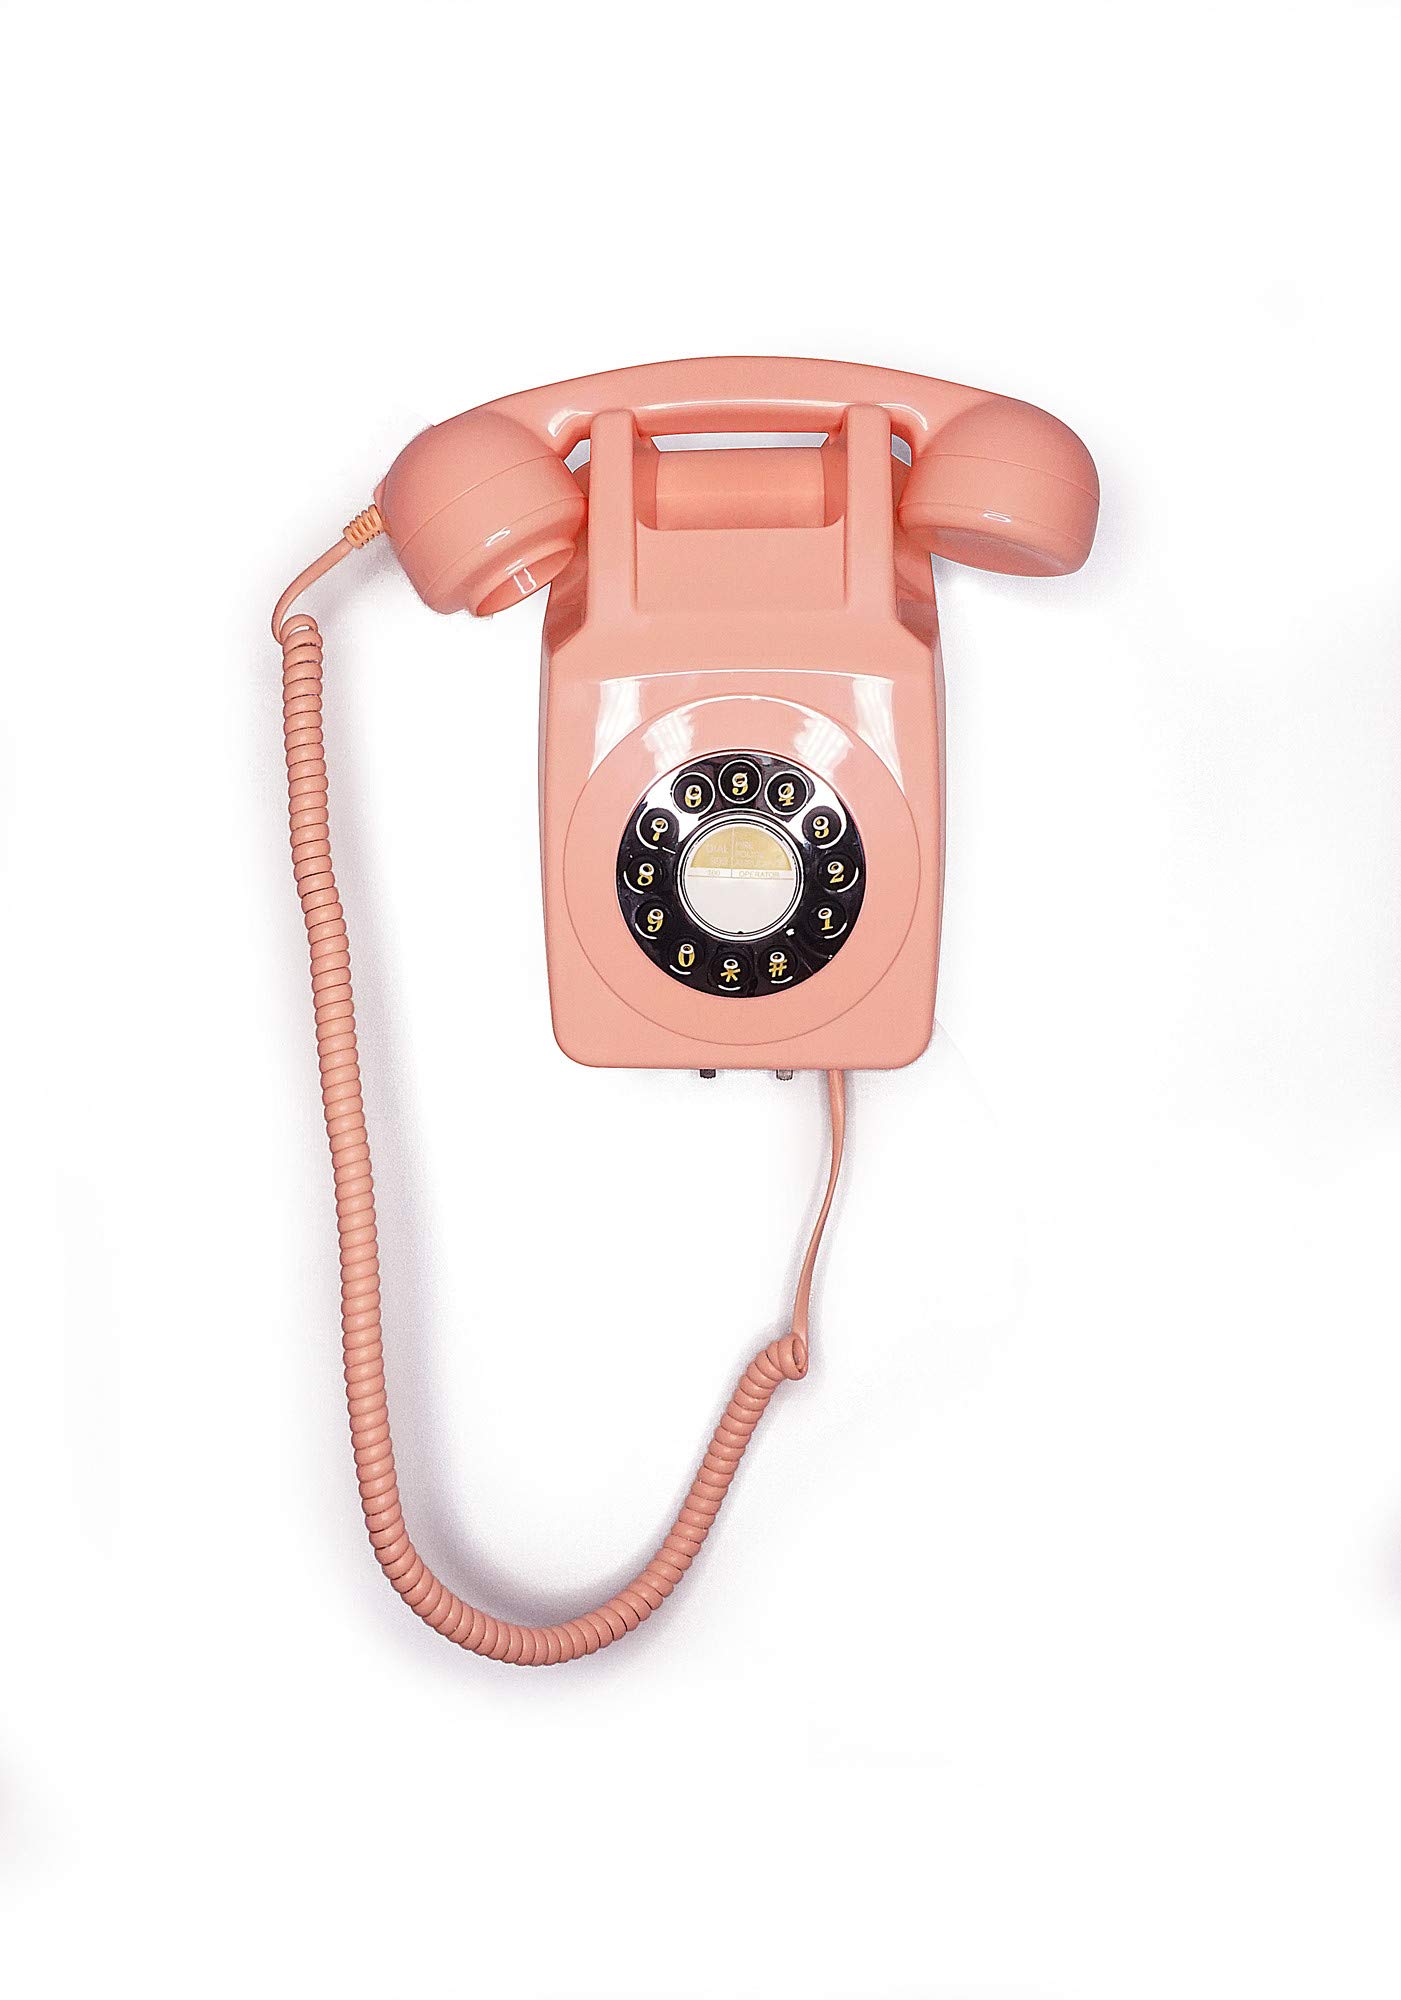 GPO Retro Festnetztelefon 746 mit Druckknopf zur Wandmontage, lockiges Kabel, authentischer Klingelring, Pink, GPO746WALLPUSHPINK